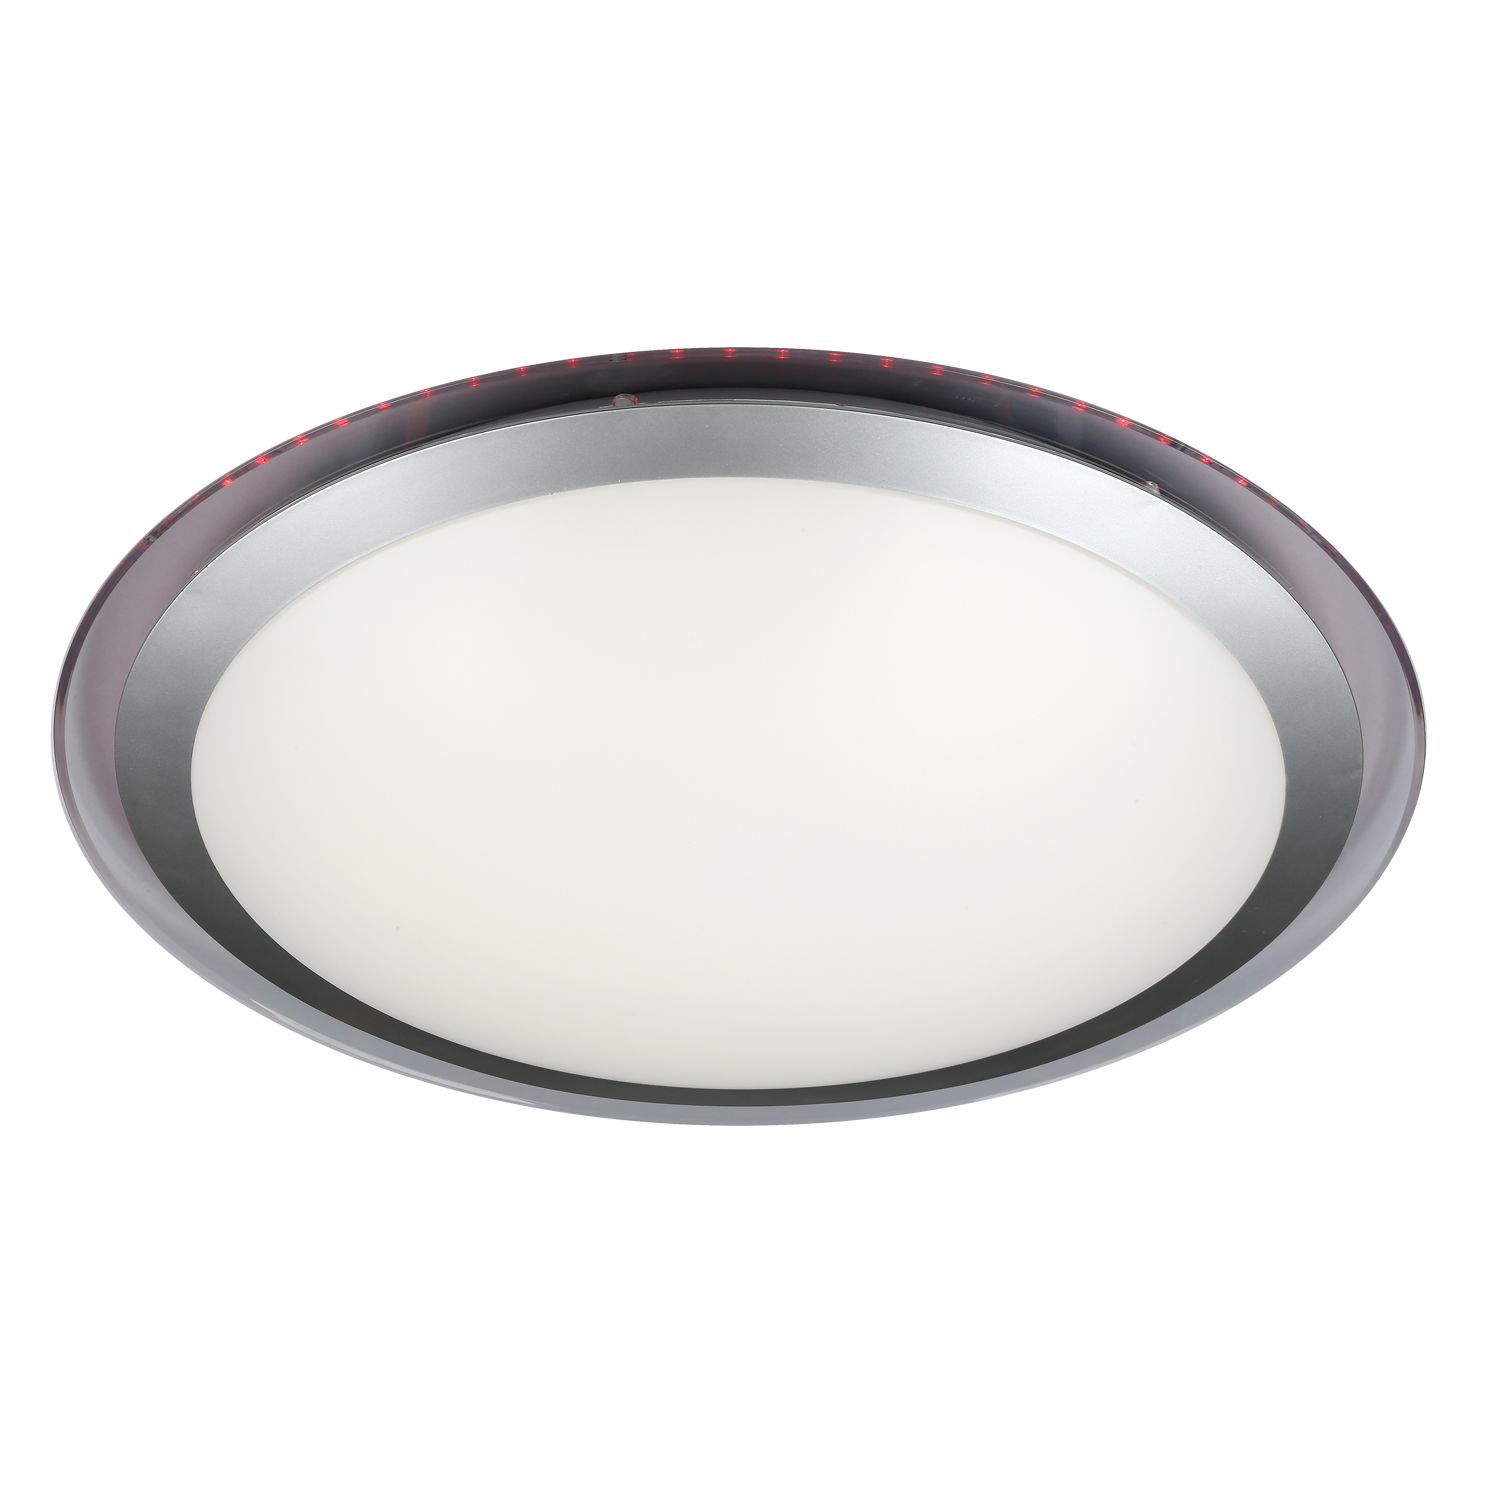 Светодиодный светильник 55 см, 60W, 4200 К, Omnilux, OML-47107-60, белый